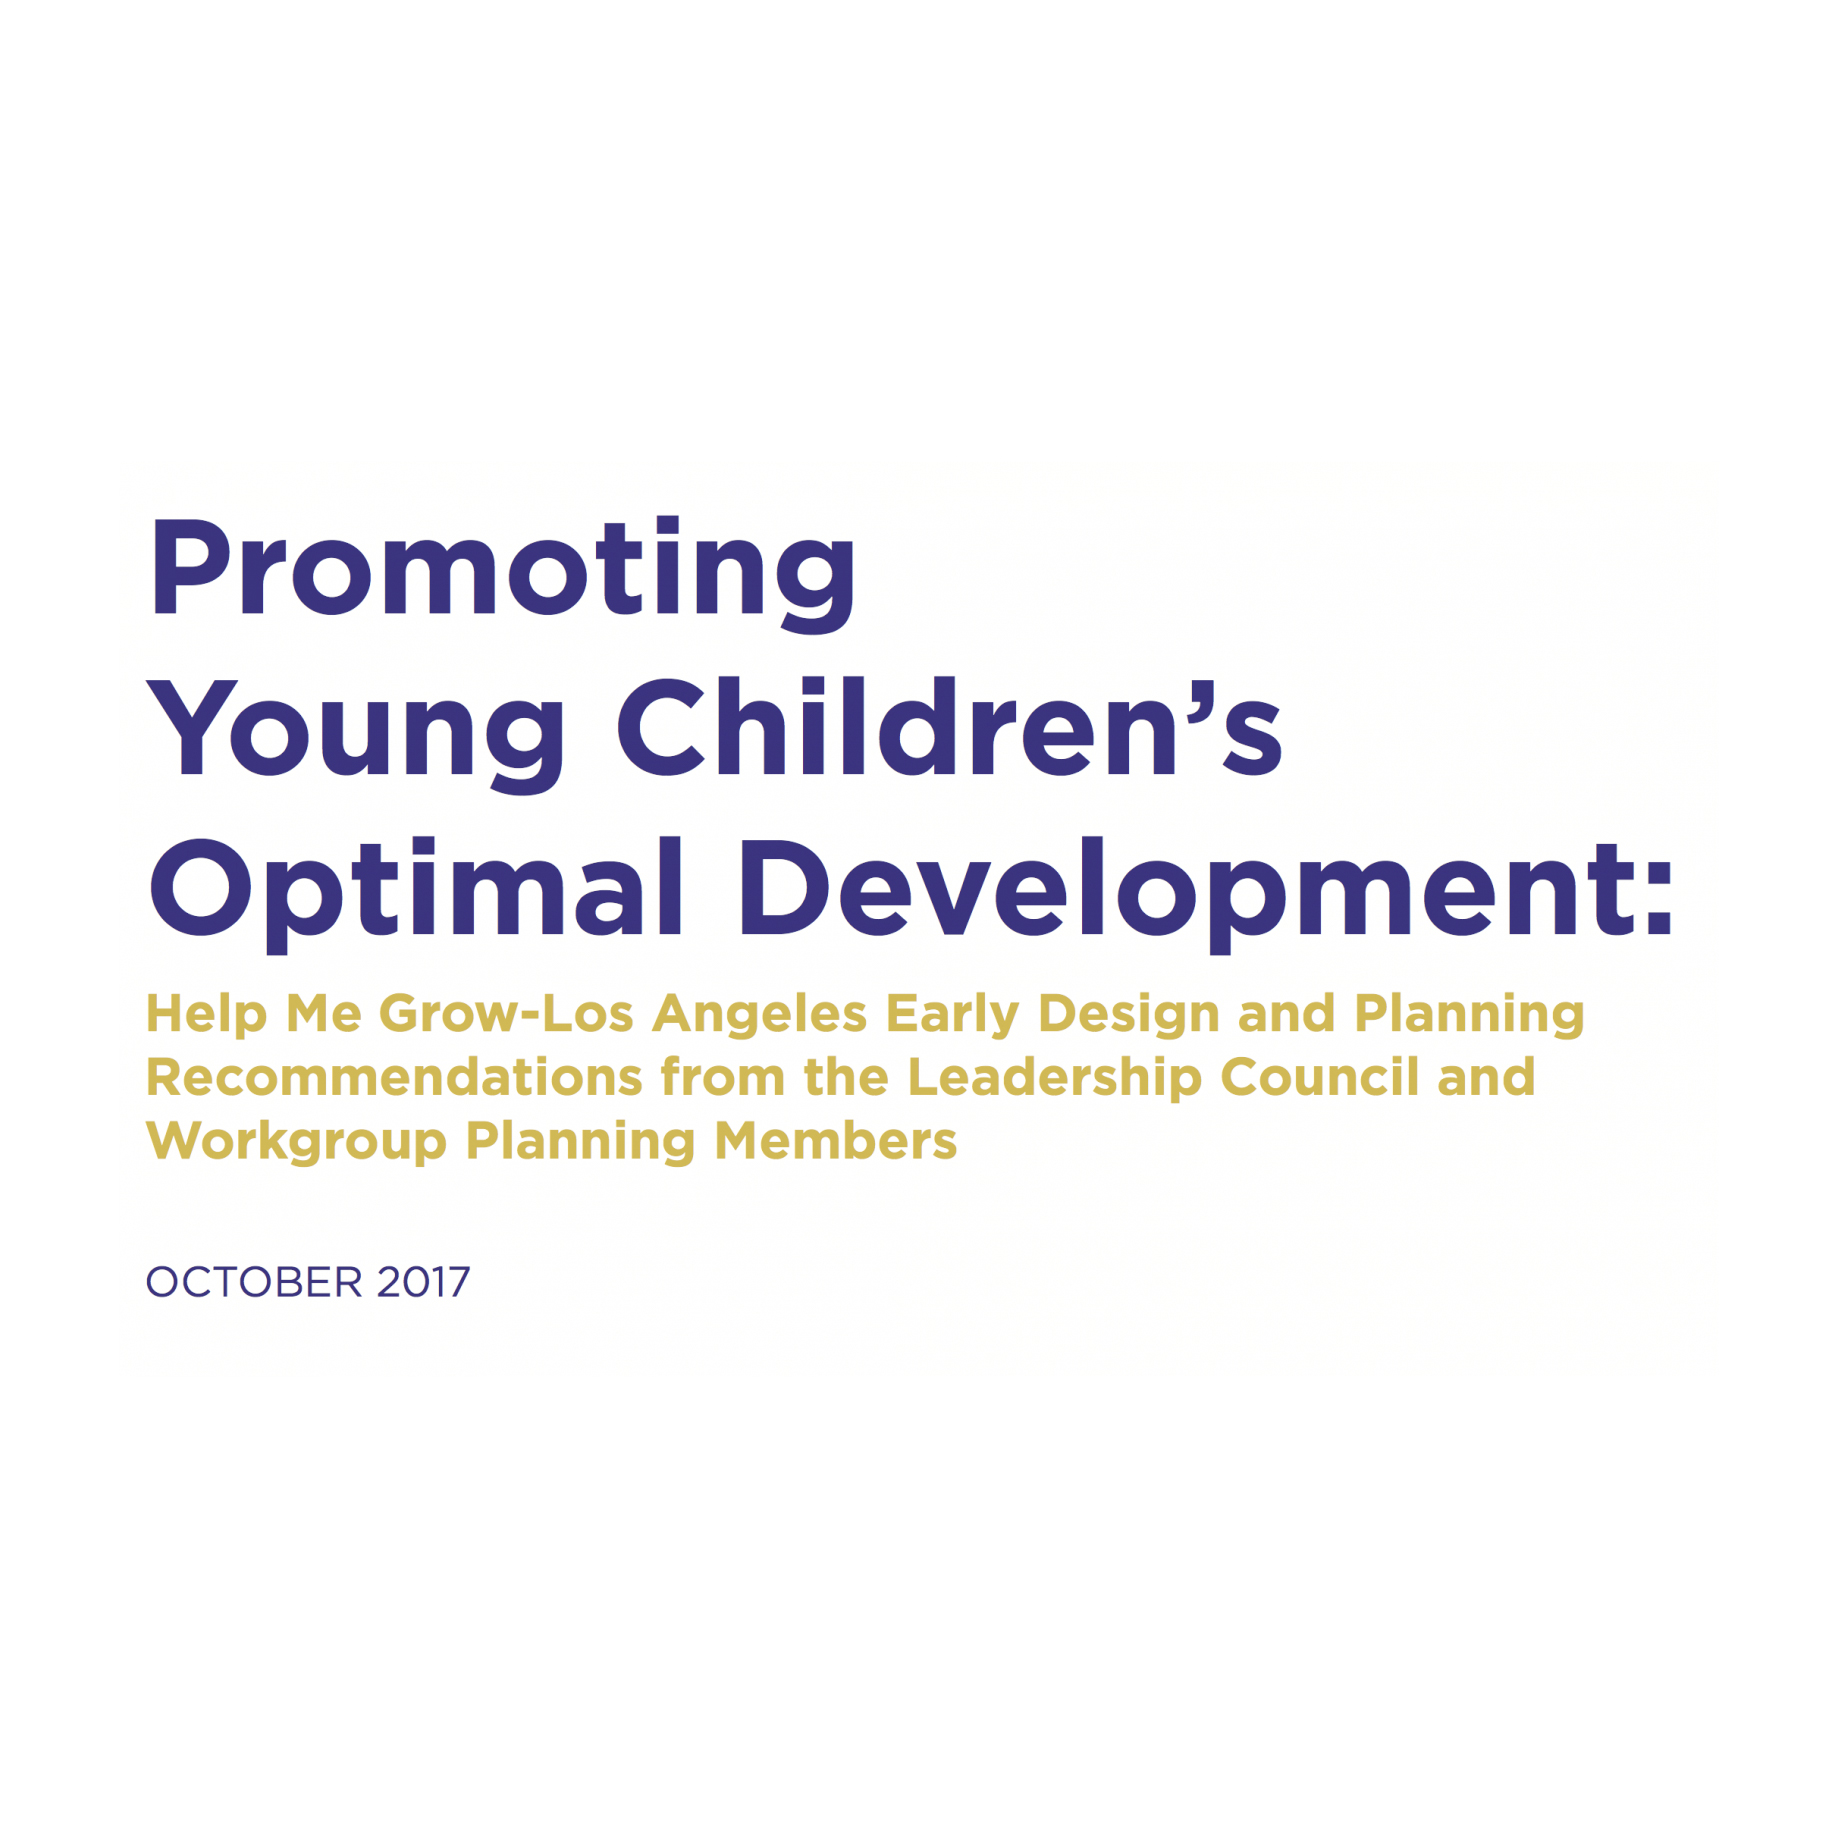 Báo cáo phát hành Help Me Grow-LA: “Thúc đẩy sự phát triển tối ưu của trẻ em”